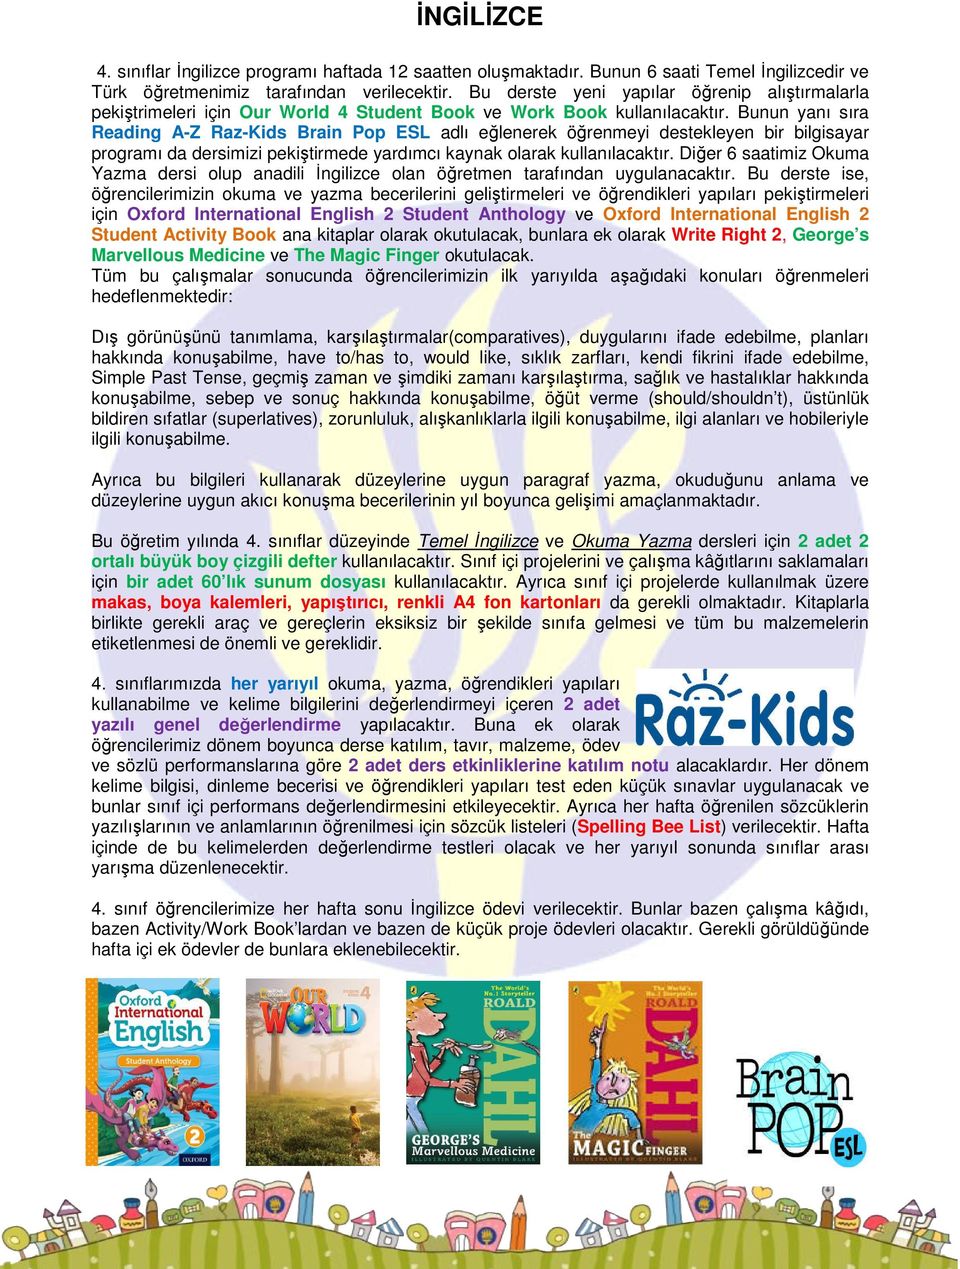 Bunun yanı sıra Reading A-Z Raz-Kids Brain Pop ESL adlı eğlenerek öğrenmeyi destekleyen bir bilgisayar programı da dersimizi pekiştirmede yardımcı kaynak olarak kullanılacaktır.